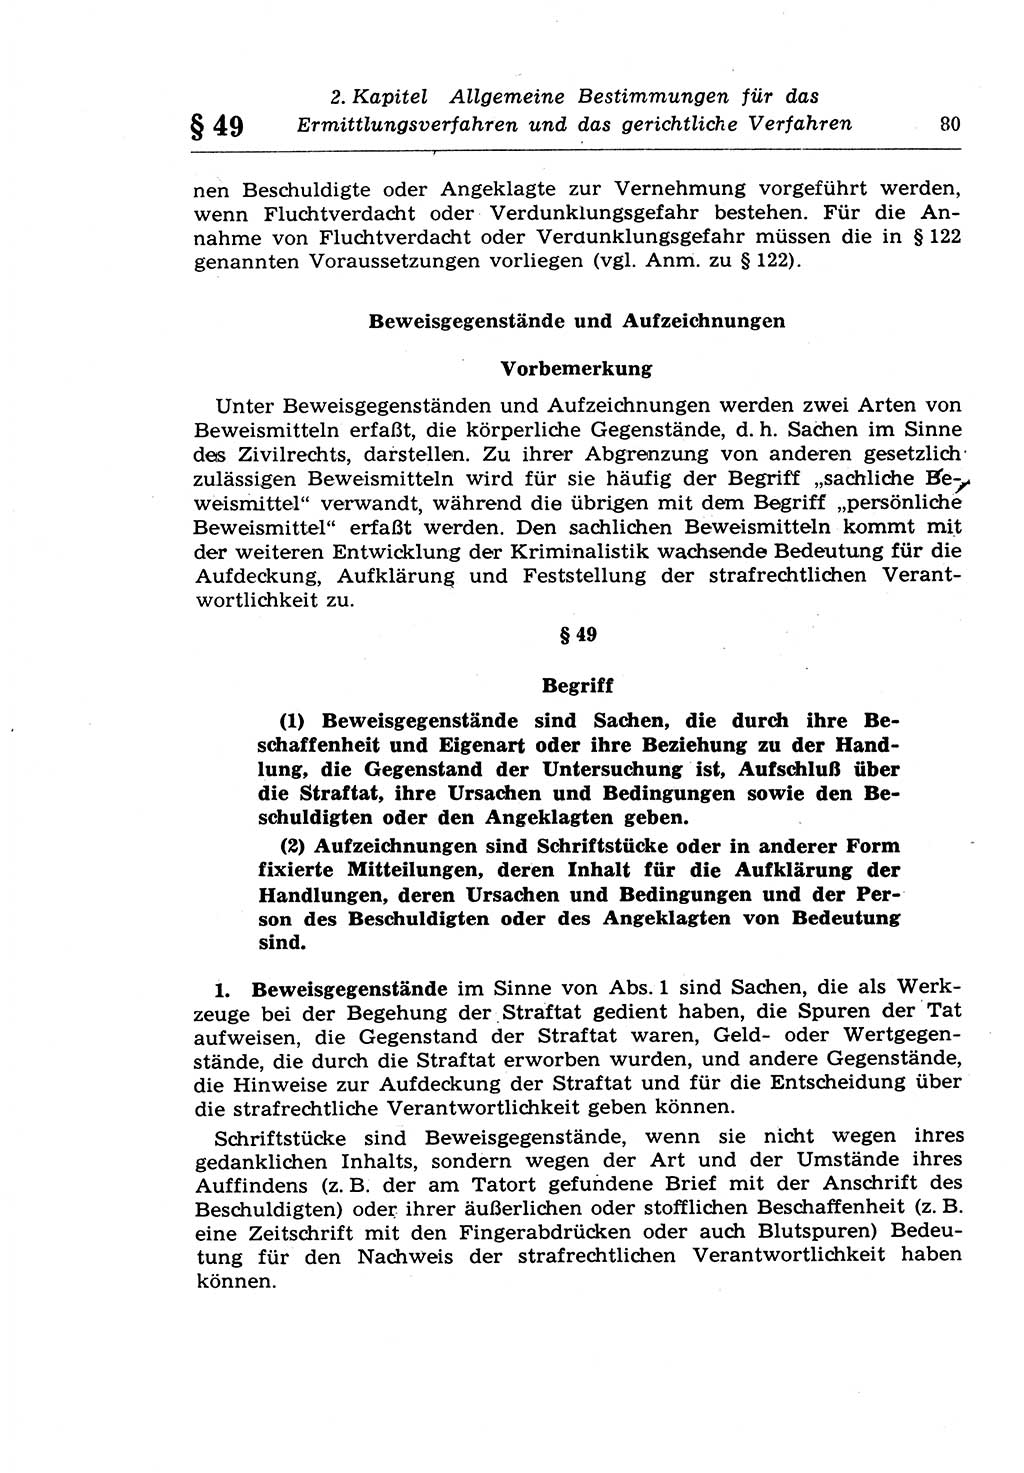 Strafprozeßrecht der DDR (Deutsche Demokratische Republik), Lehrkommentar zur Strafprozeßordnung (StPO) 1968, Seite 80 (Strafprozeßr. DDR Lehrkomm. StPO 19688, S. 80)